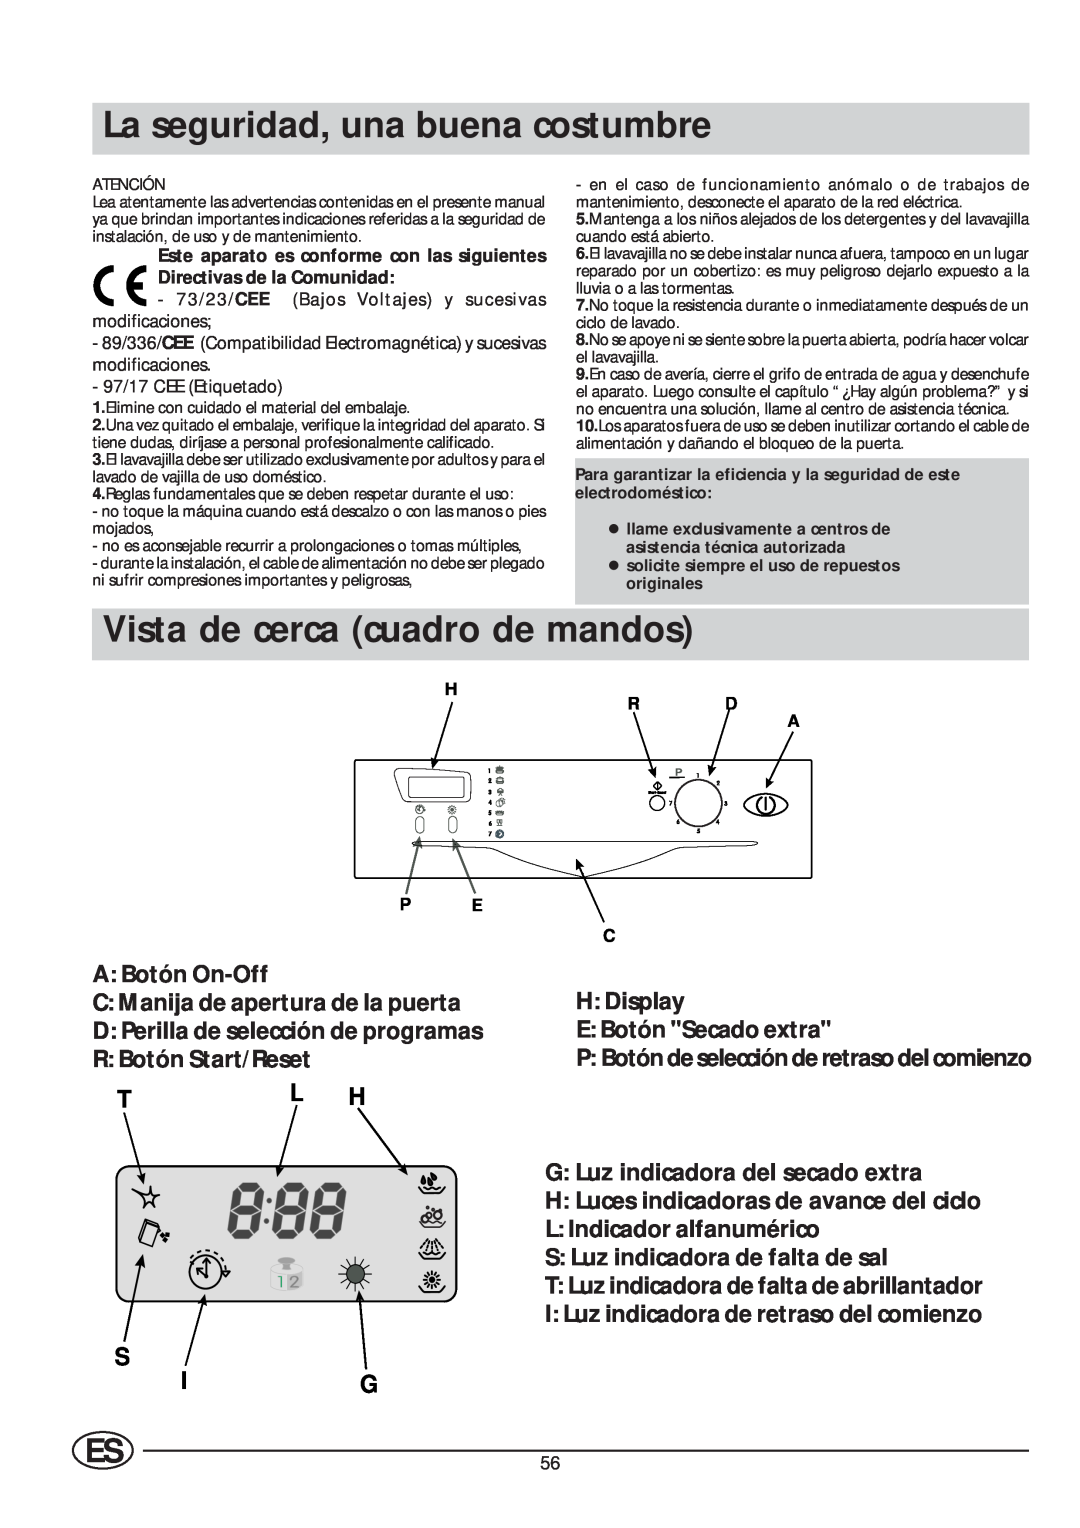 Indesit IDE 45 manual La seguridad, una buena costumbre, Vista de cerca cuadro de mandos, Tl H, S Ig 